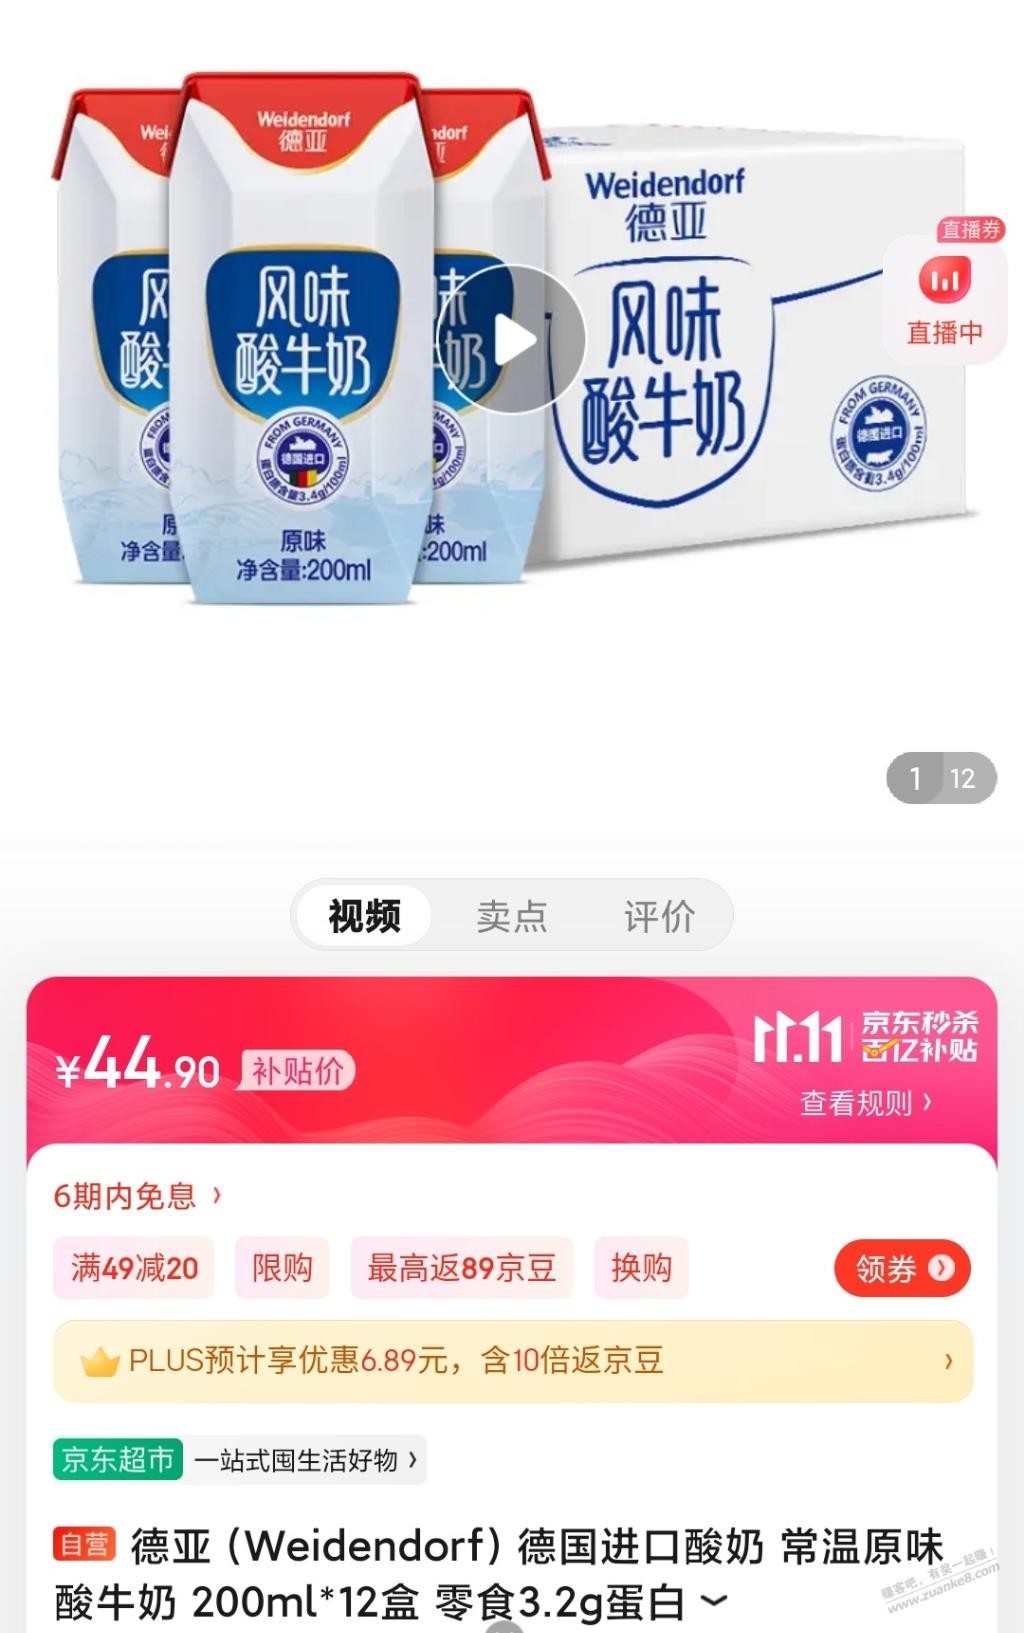 酸奶24.9-沙琪玛1.63-各买了3份-惠小助(52huixz.com)